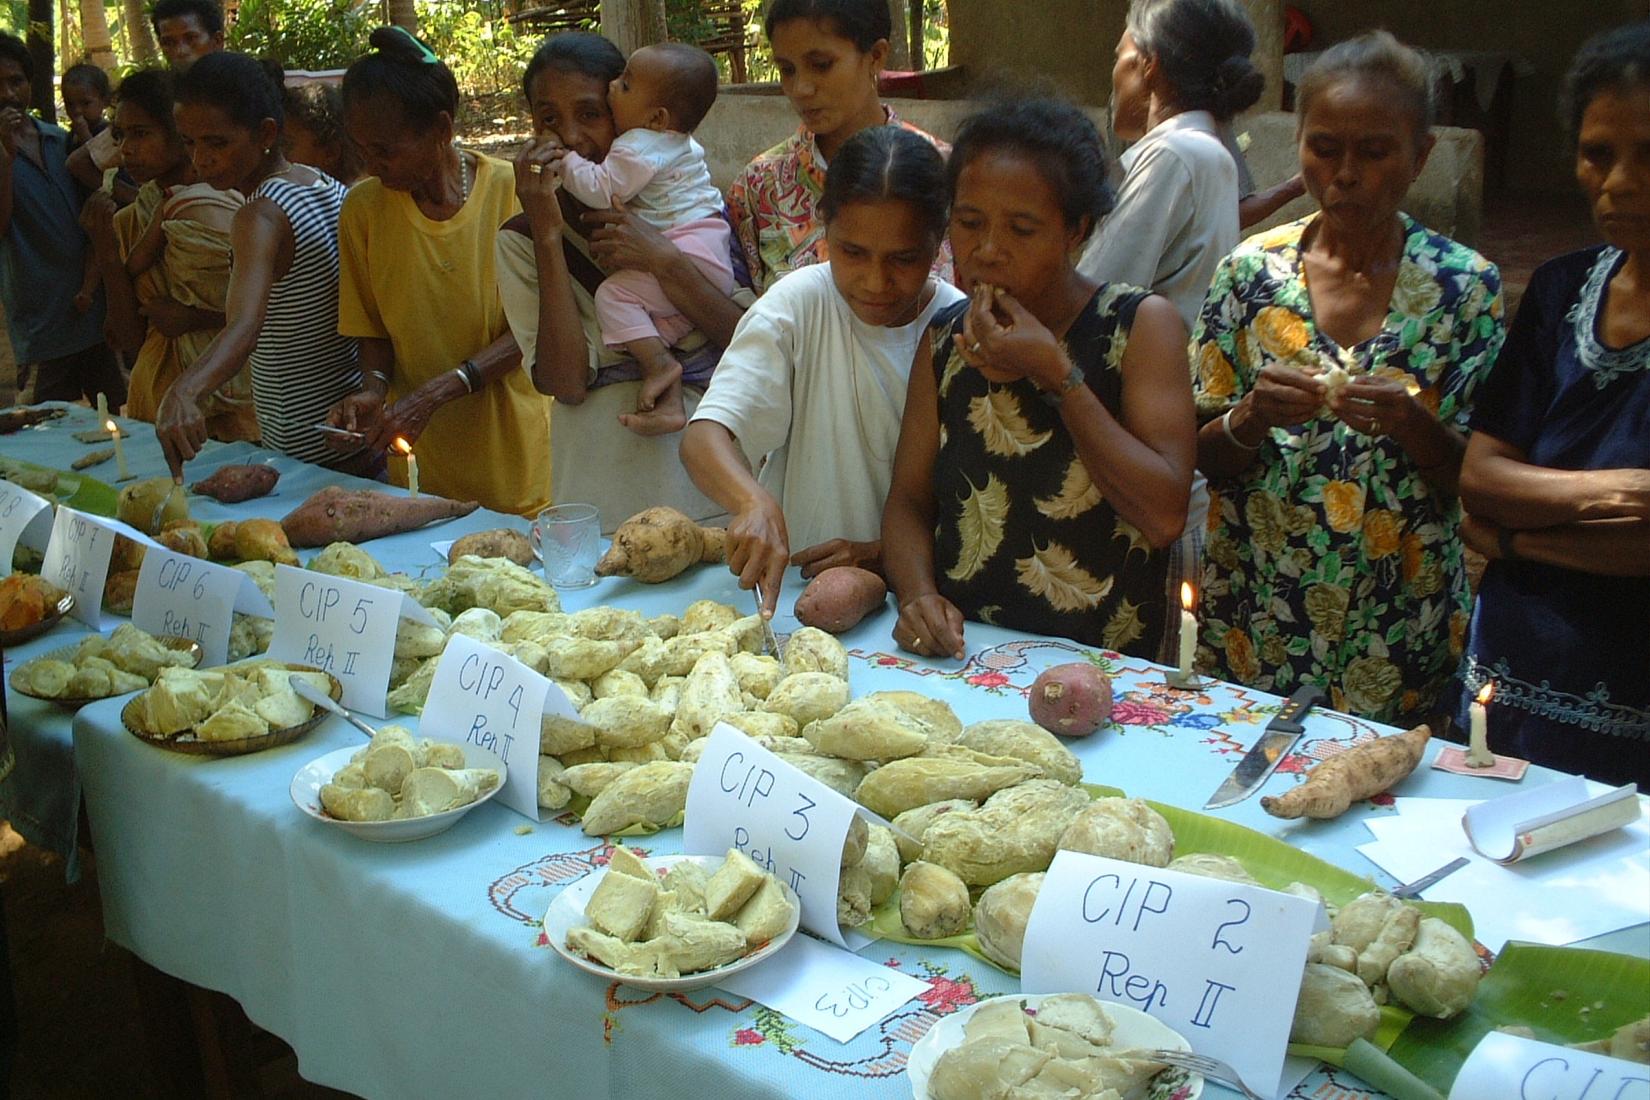 Timor-Leste Sweet Potato tasting in 2004 in Maliana.